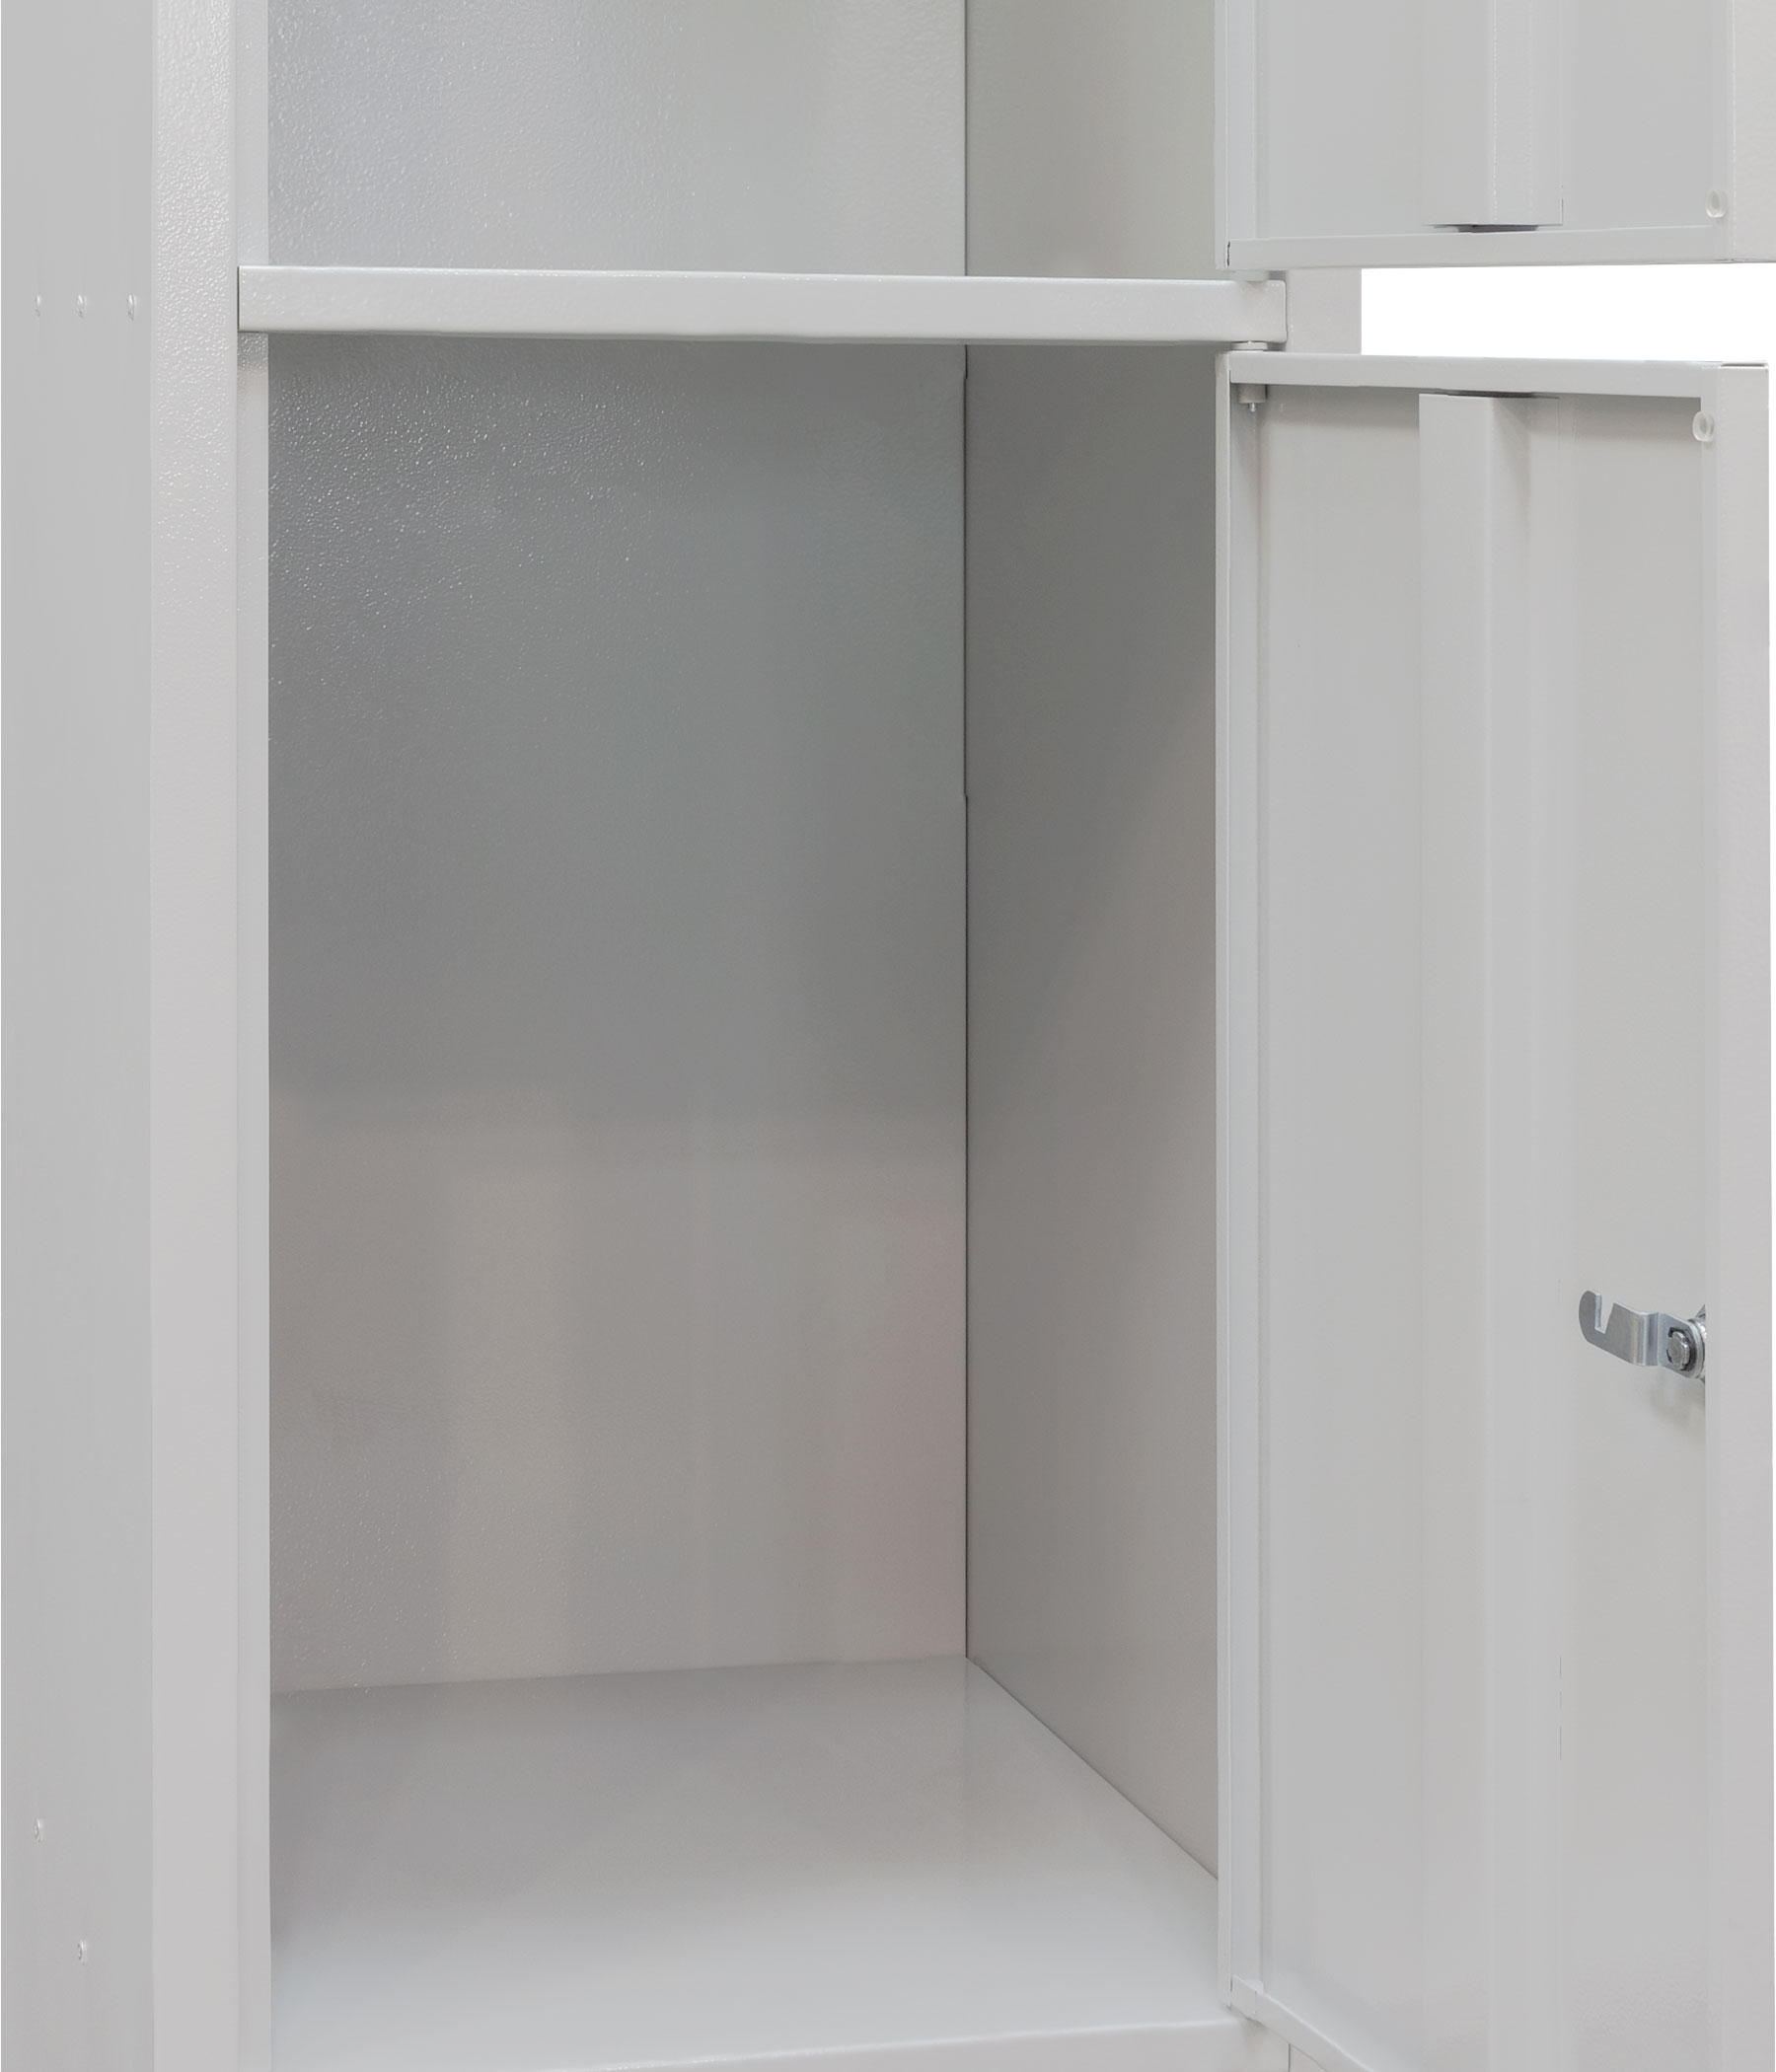 Ячеечные шкафы (камеры хранения) ШО-300/1-3